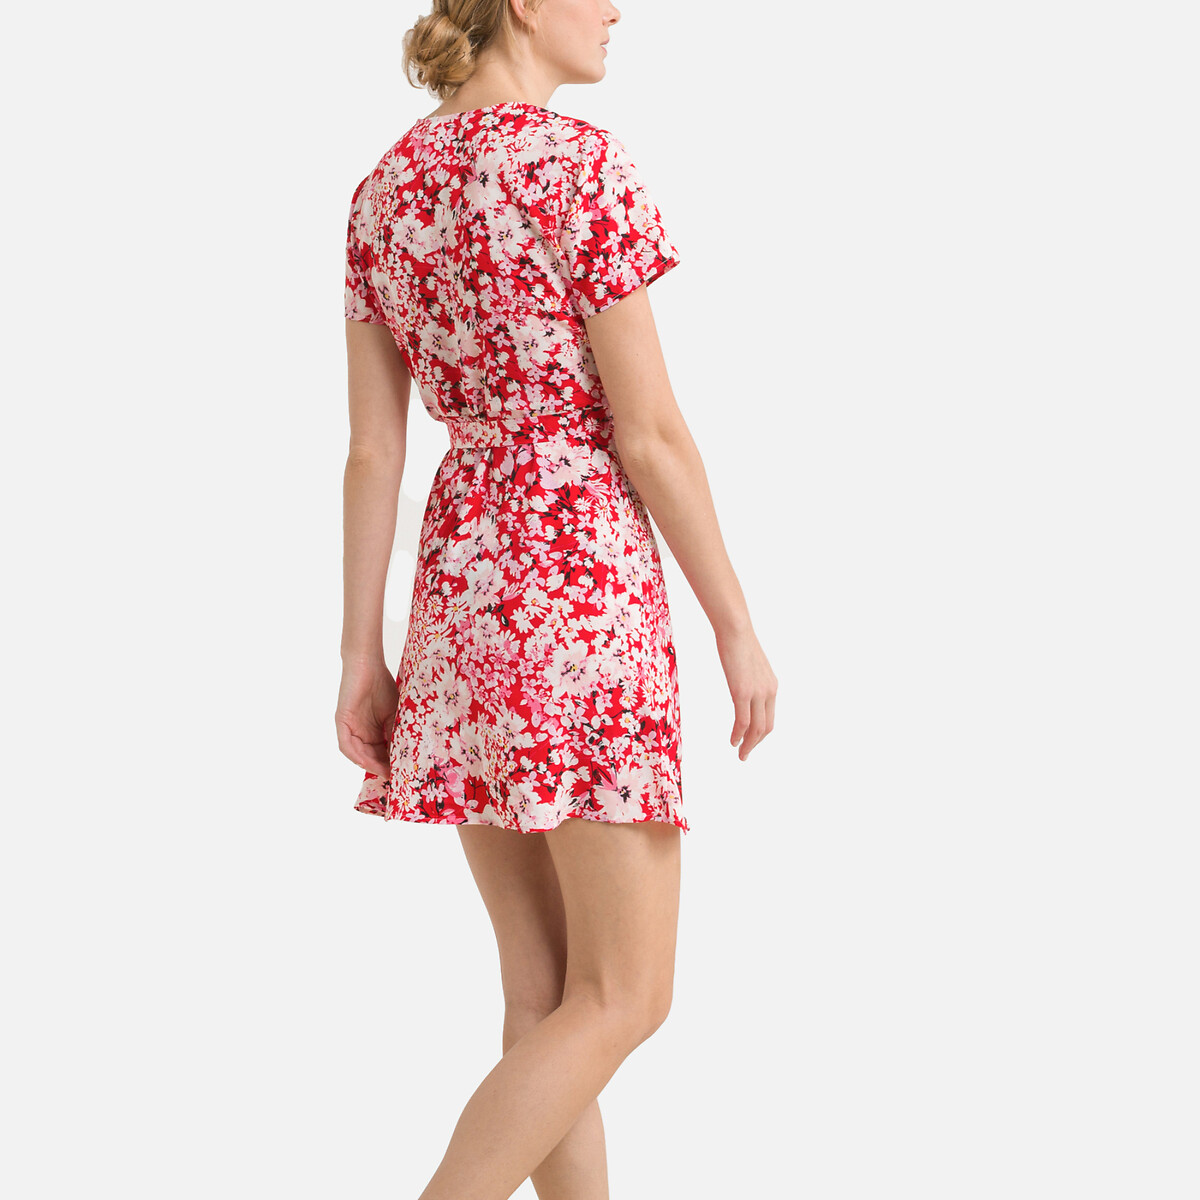 Платье ONLY С цветочным принтом короткое V-образный принт M красный, размер M - фото 4